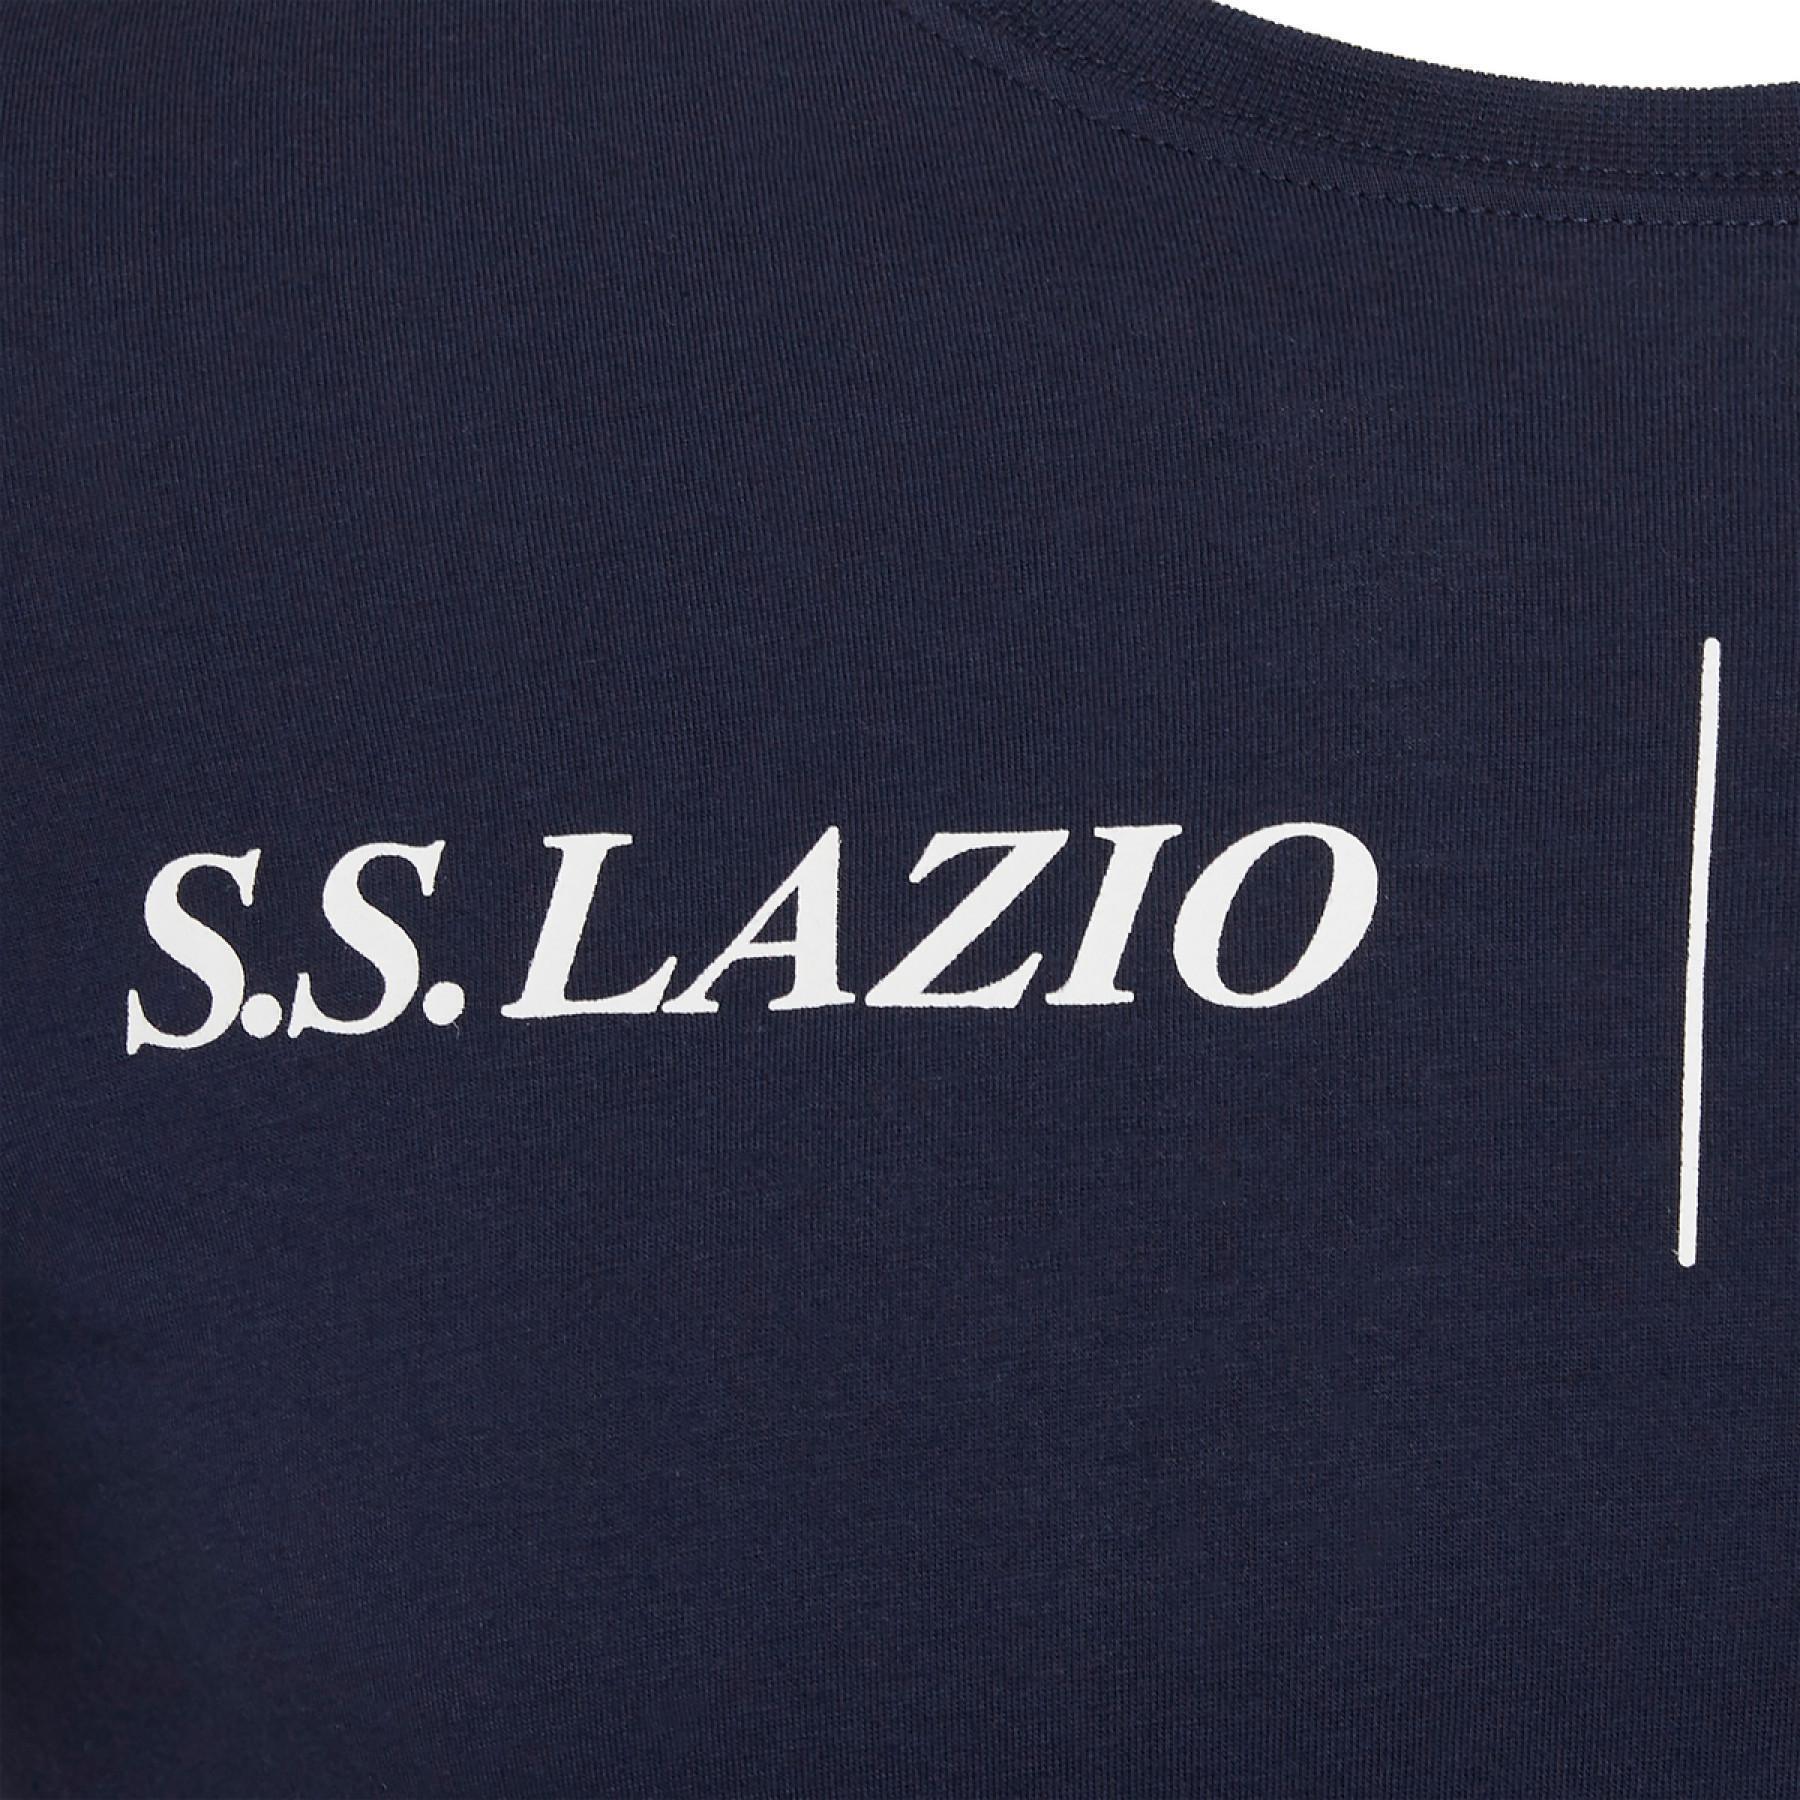 Koszulka Lazio Rome coton 2020/21